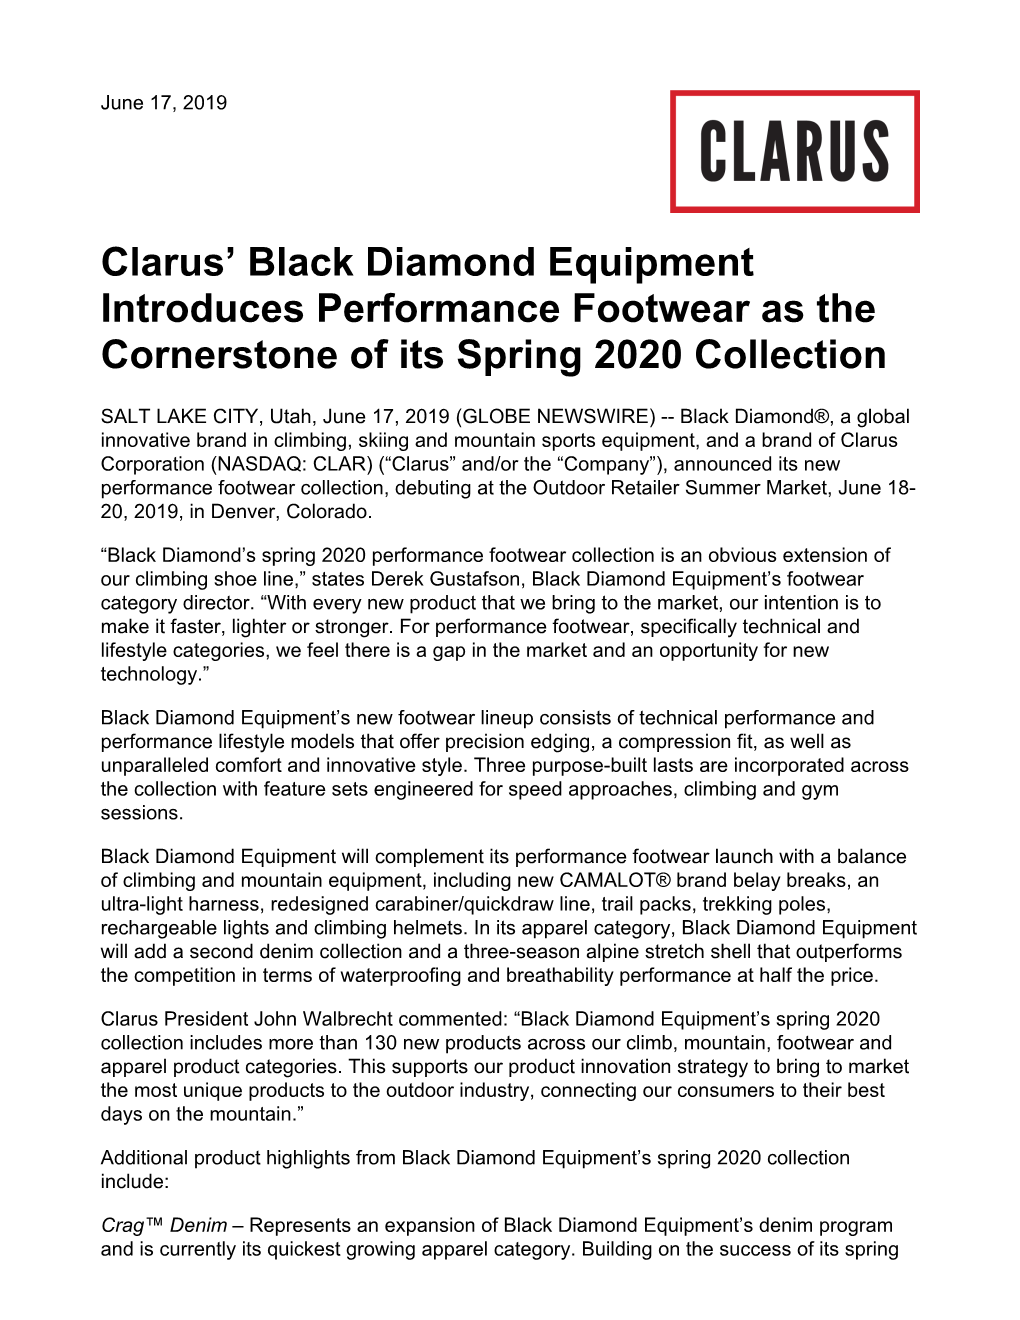 Clarus' Black Diamond Equipment Introduces